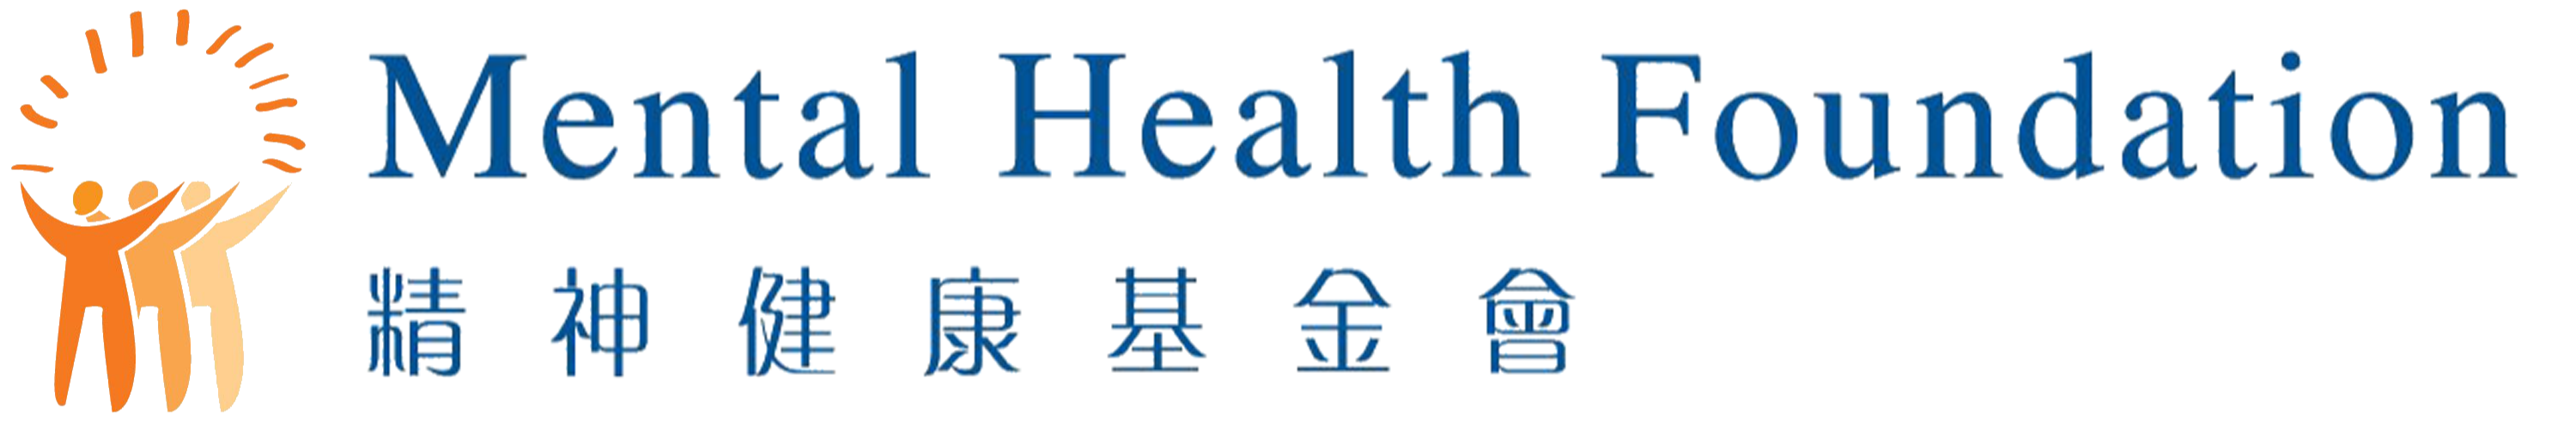 HKMHF 精神健康資訊平台